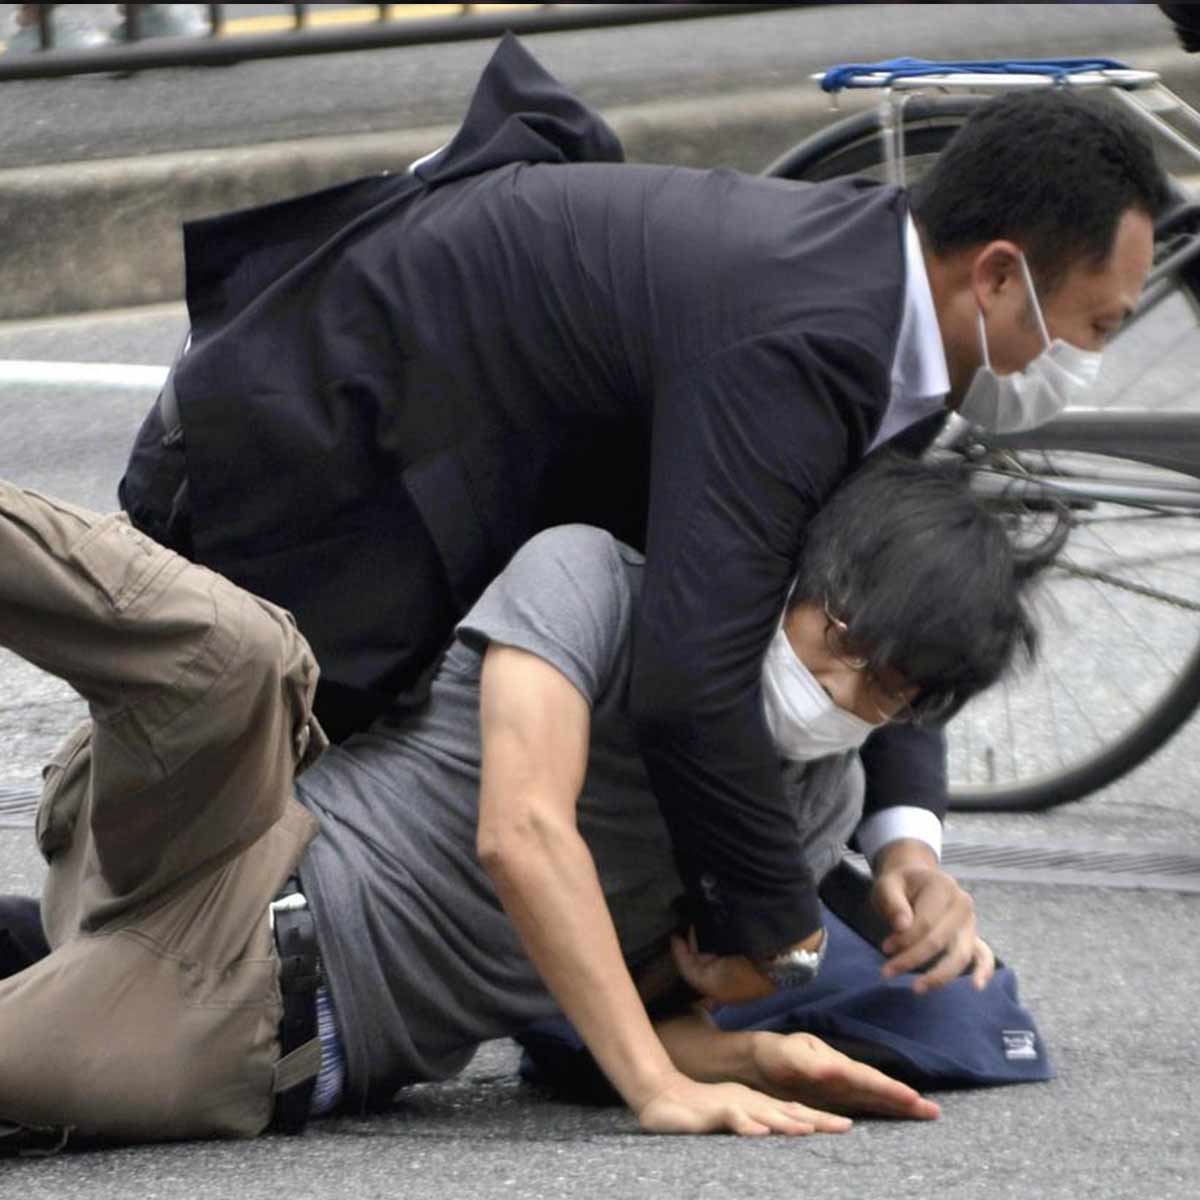 El sospechoso declaró que sentía rencor contra una organización en particular, indicó la policía el viernes. / Foto: AP